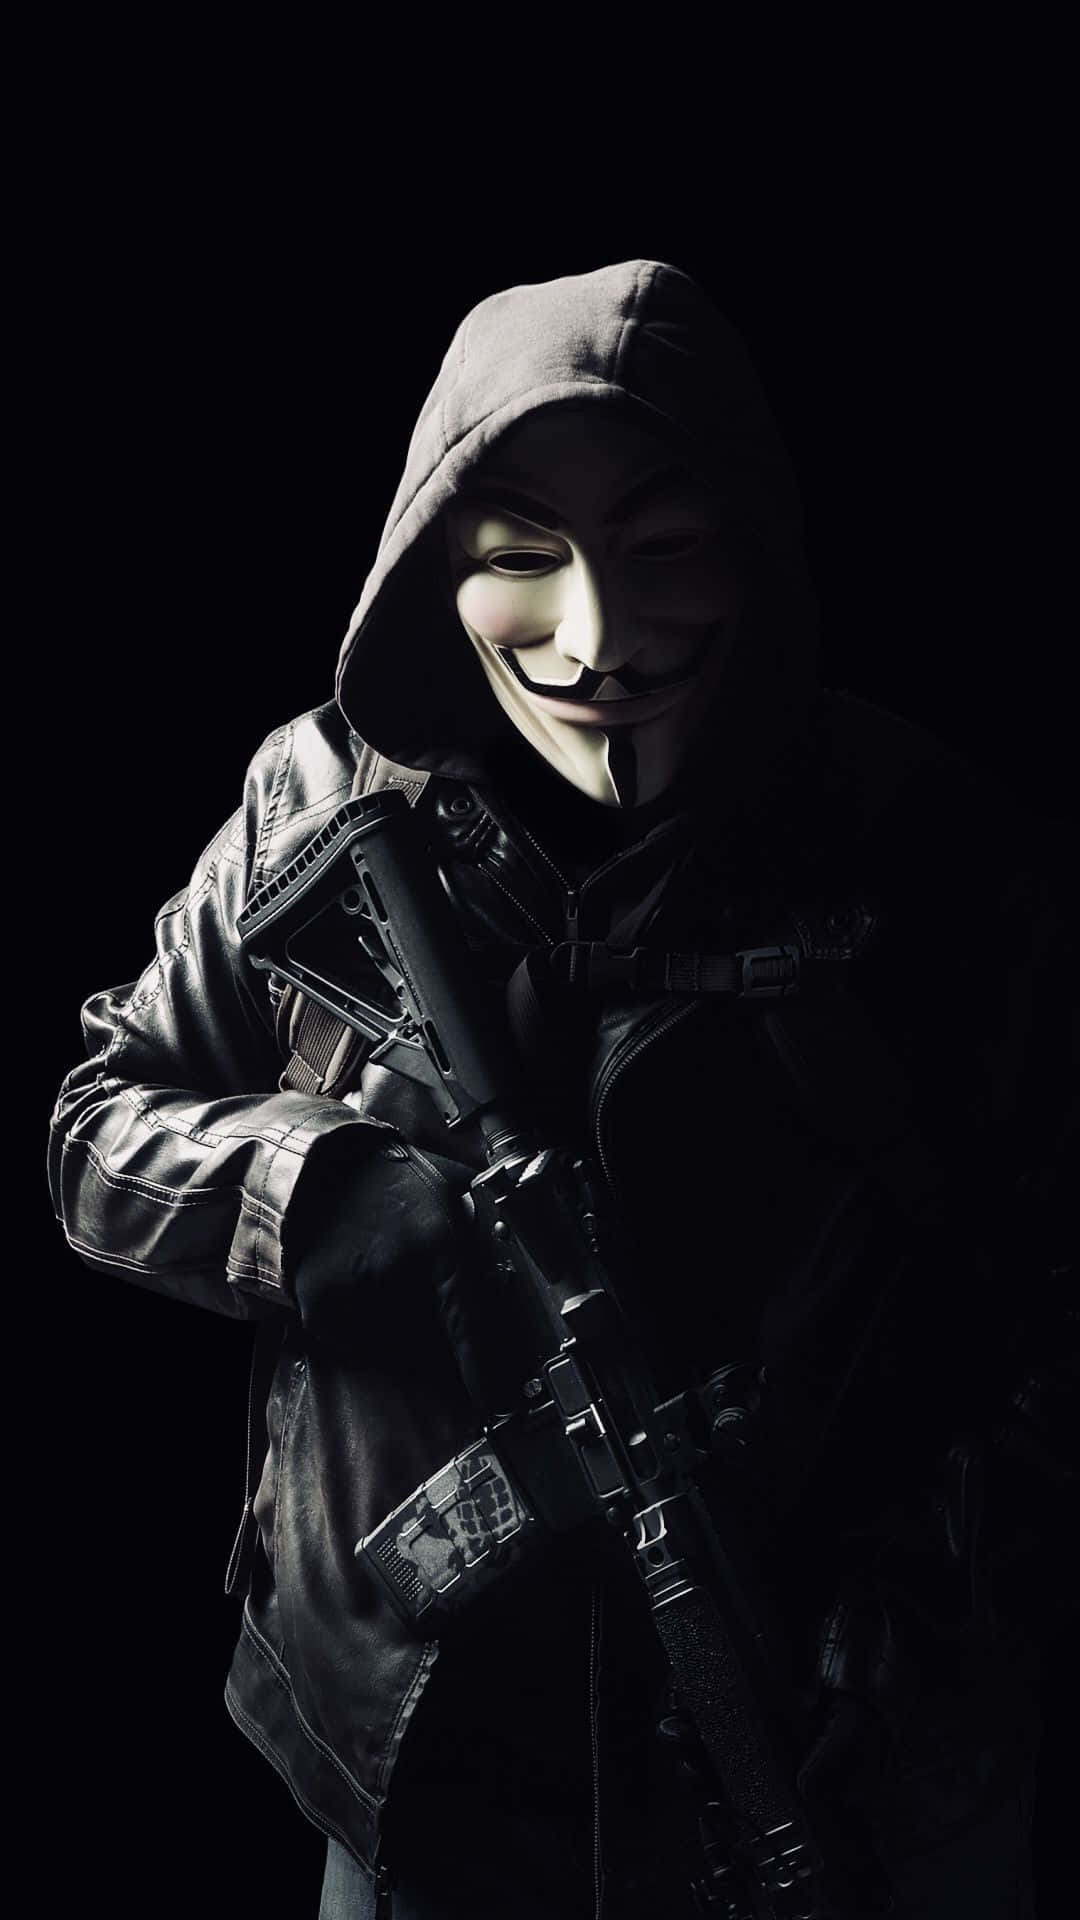 A Man In A Mask Holding A Gun Wallpaper